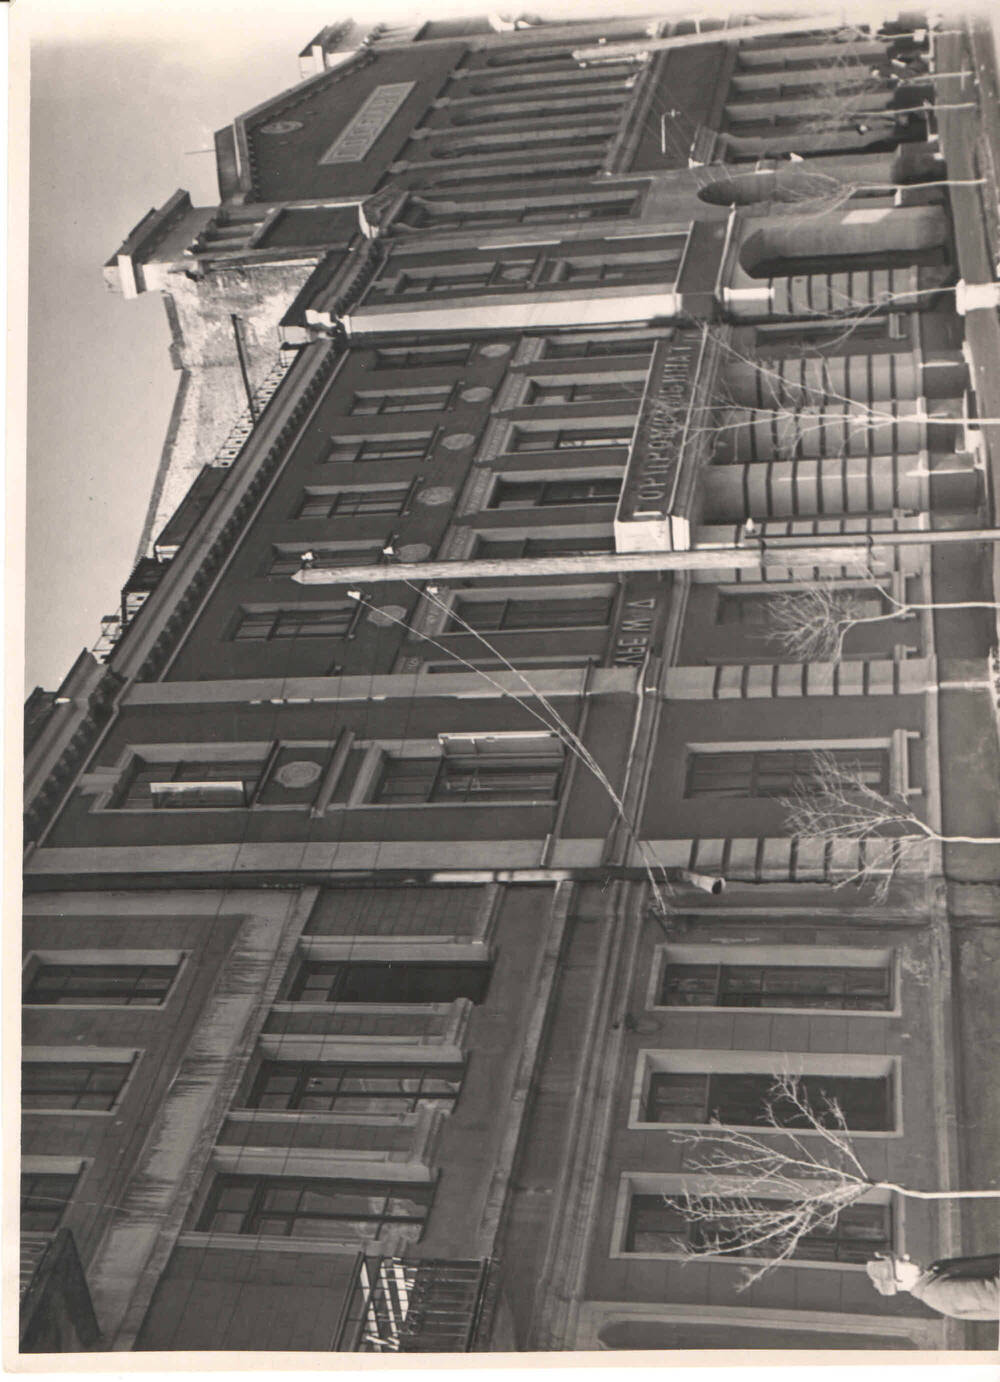 Фотоснимки предприятий и учреждений города Армавира разных лет с 1930 по 1964 гг.
Здание, расположенное по улице Ленина. Снимок 1963 года.